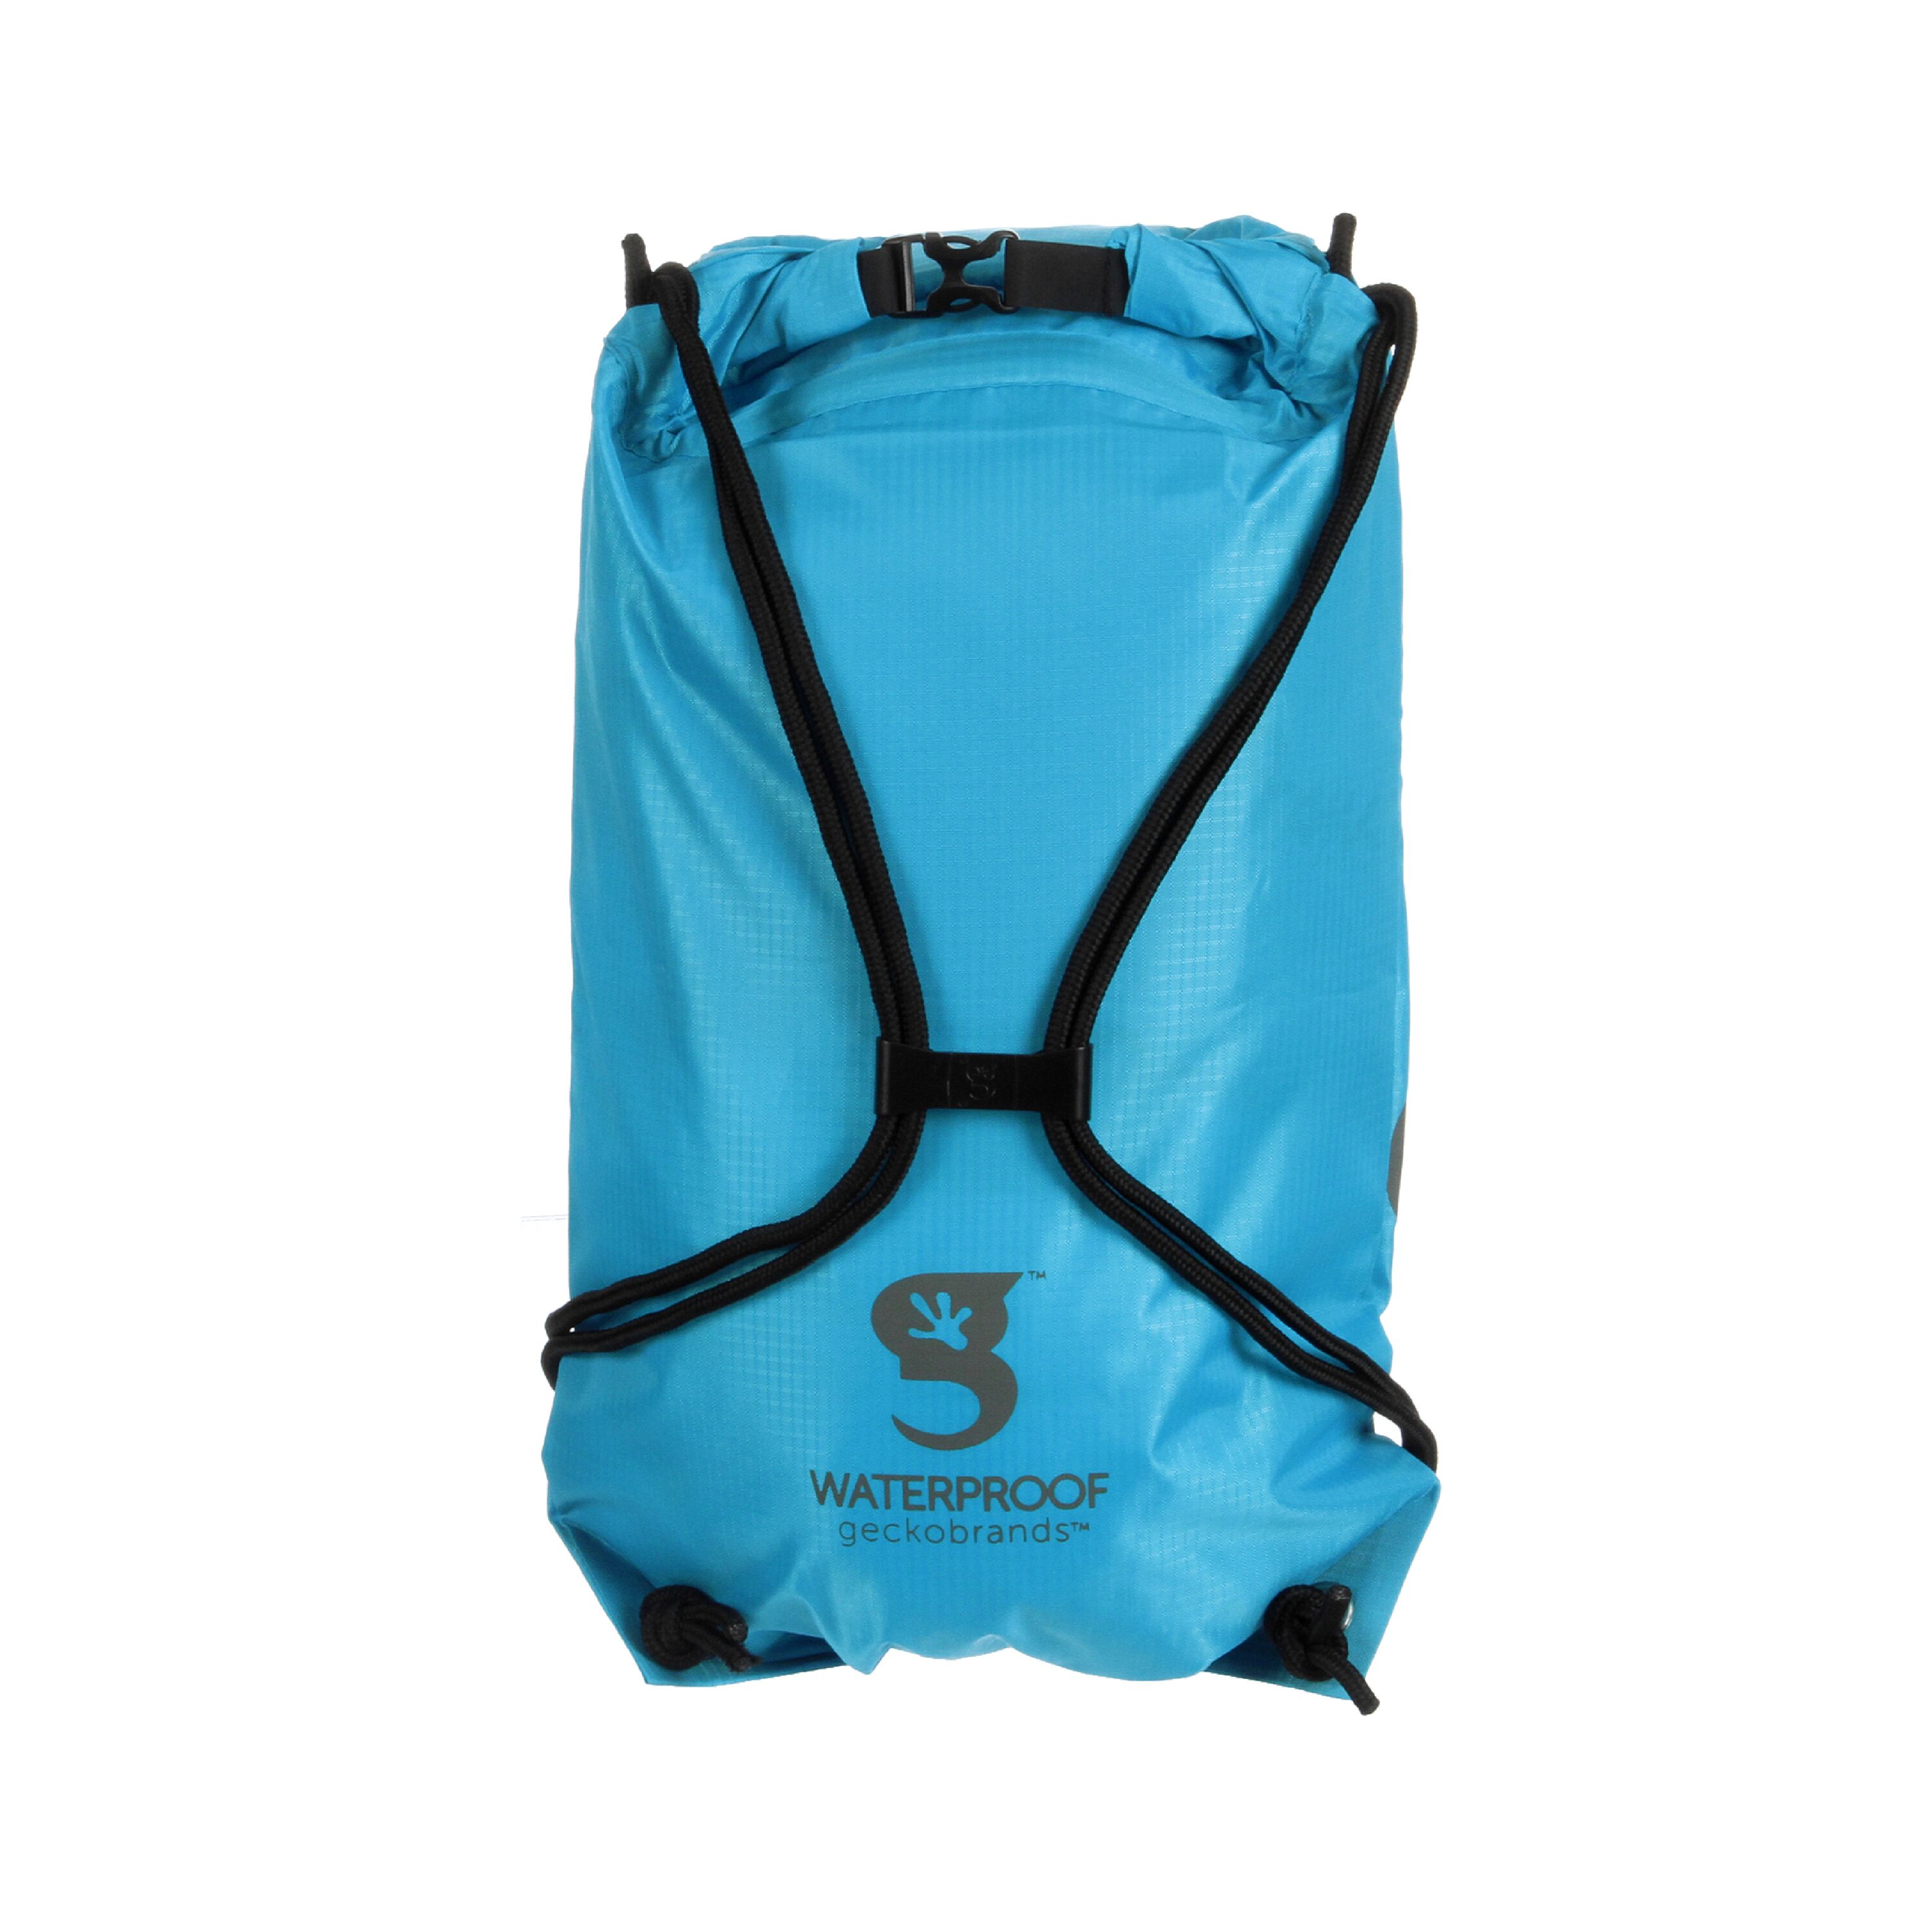 Neon Blue/Grey Drawstring Waterproof Backpack